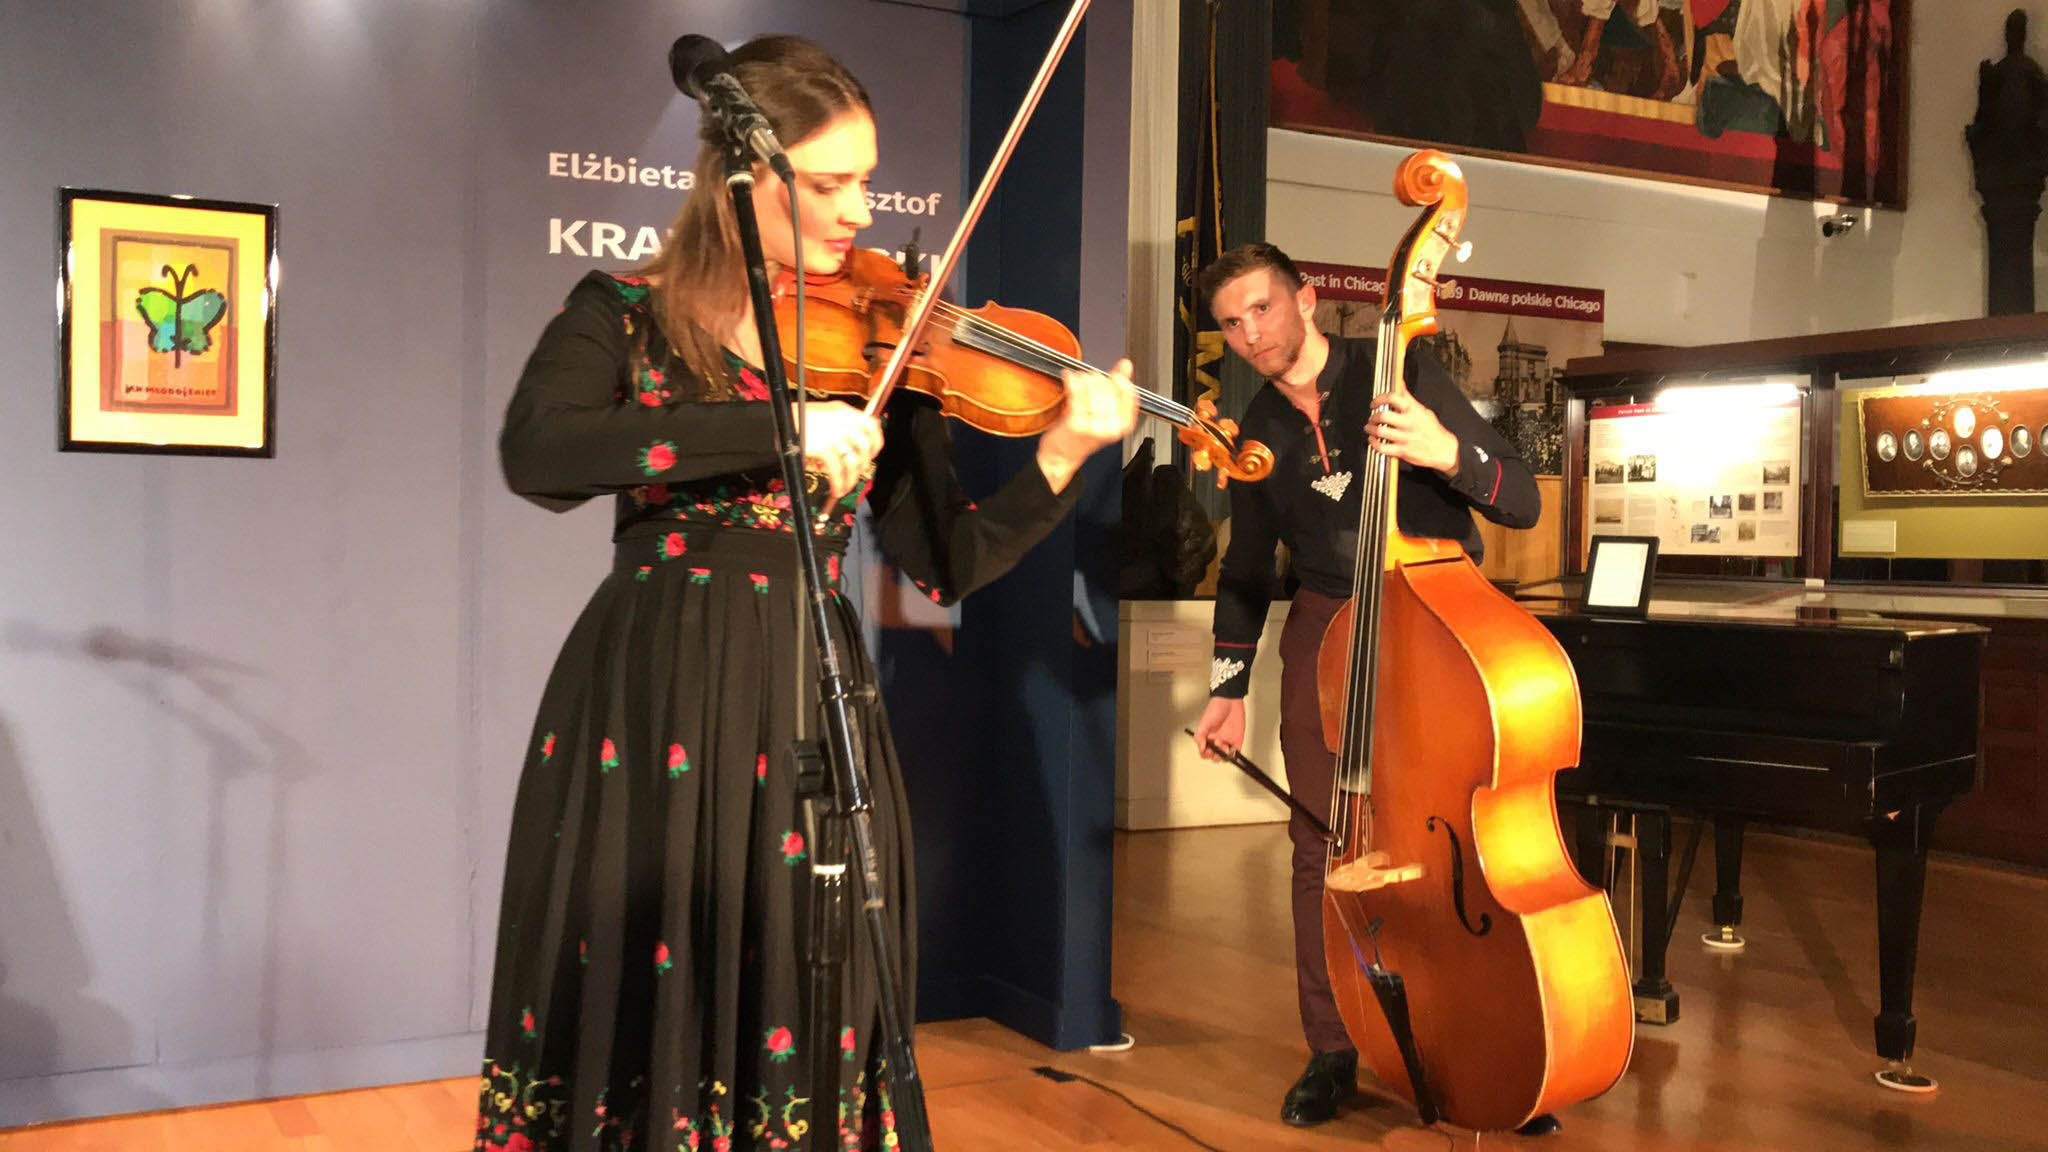 TEKLA KLEBETNICA performed at the PMA